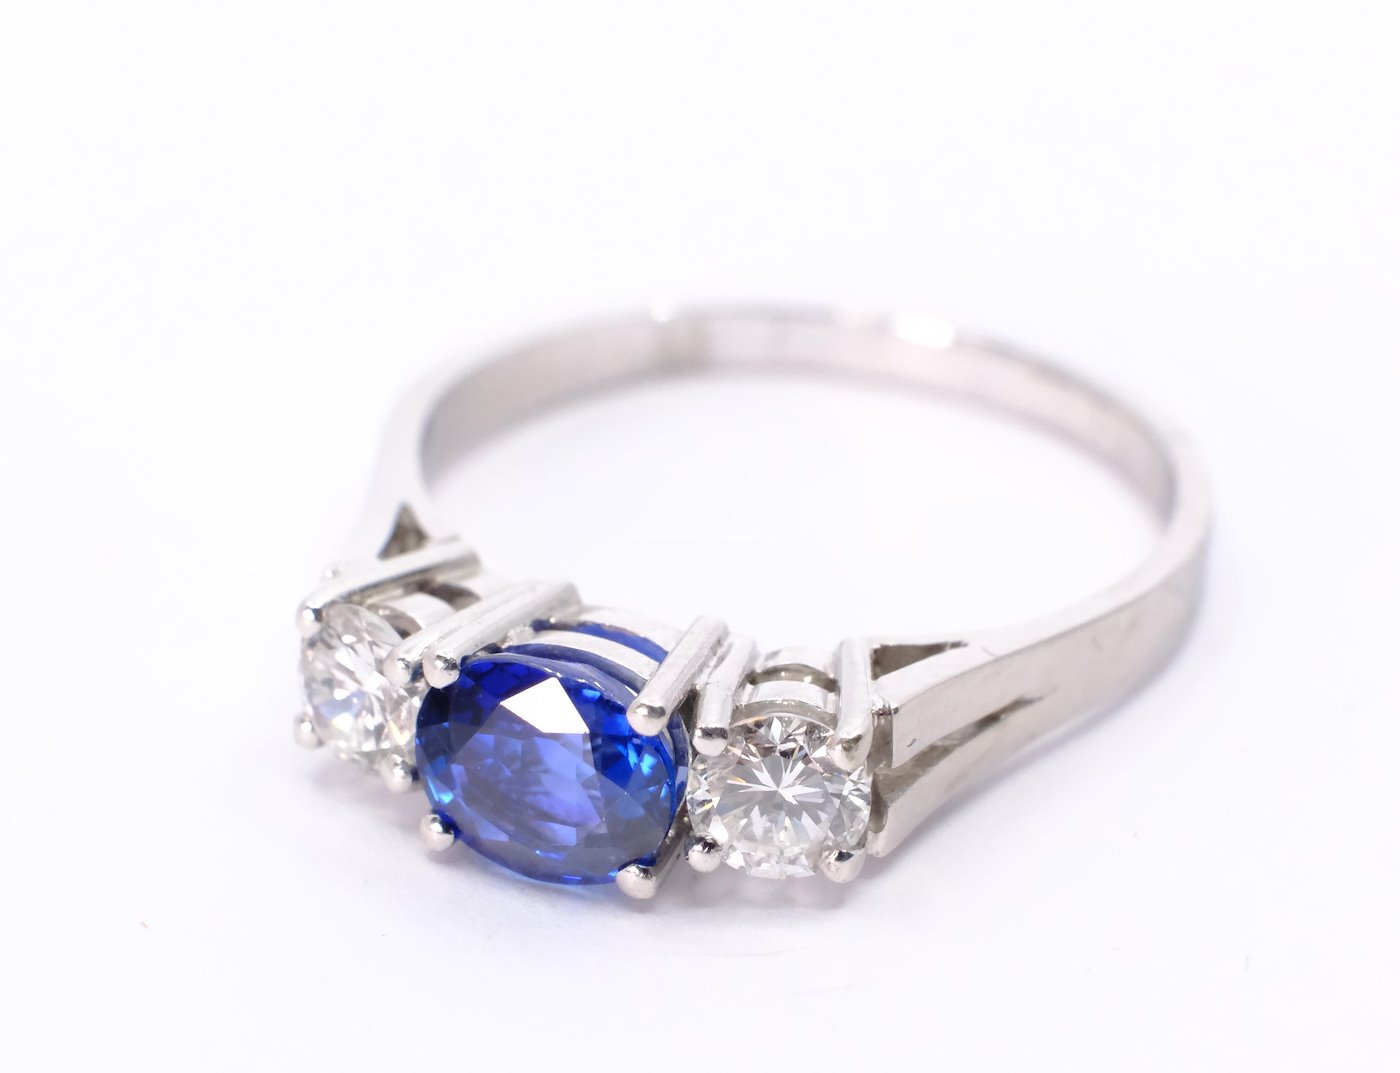 .. - Diamantový prsten se safírem, zlato 750/1000, vel. 55, hrubá hmotnost 3,55 g